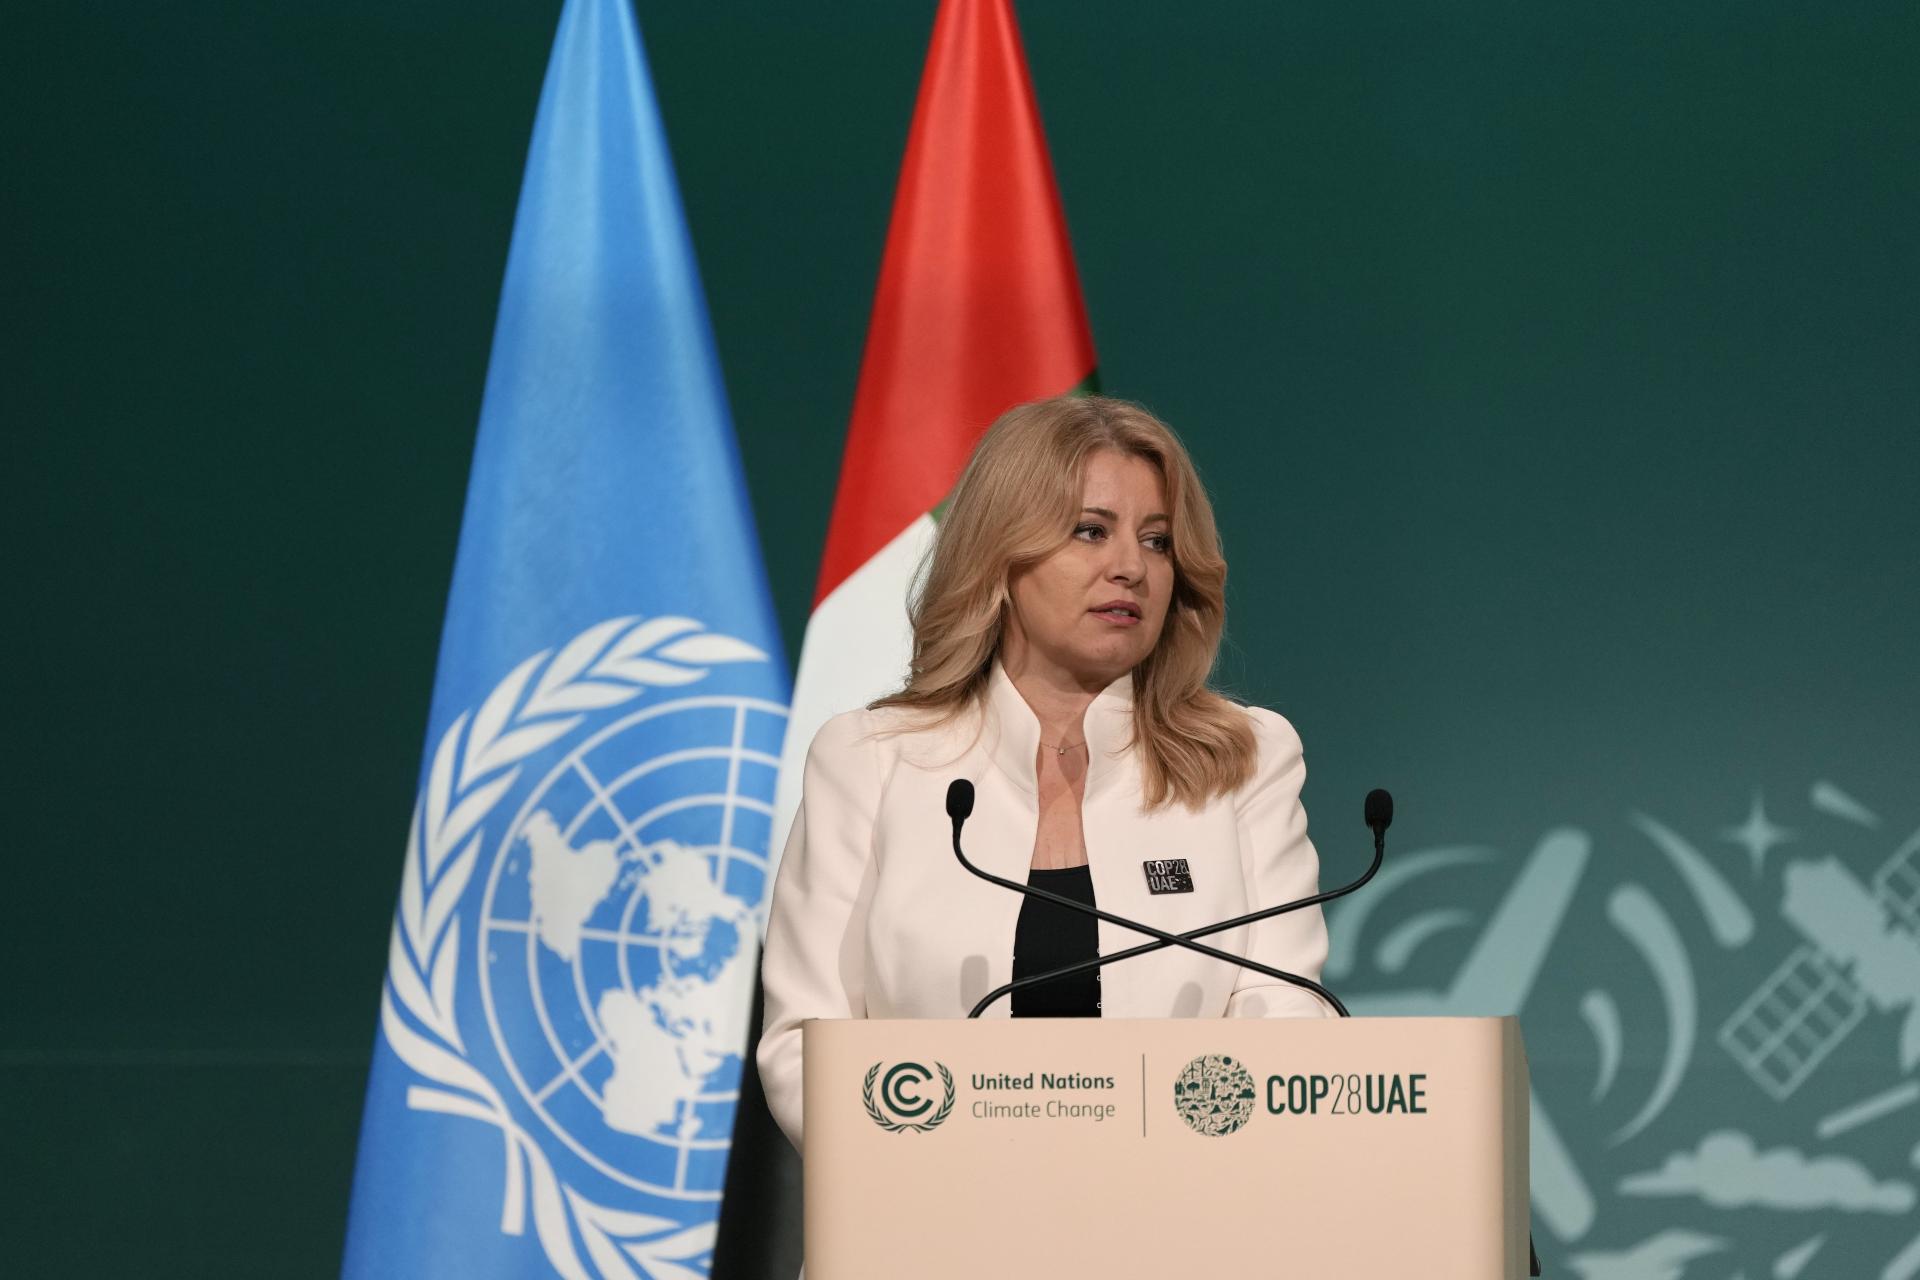 Ľudstvo sa rúti do priepasti, vyhlásila Čaputová na klimatickej konferencii v Dubaji